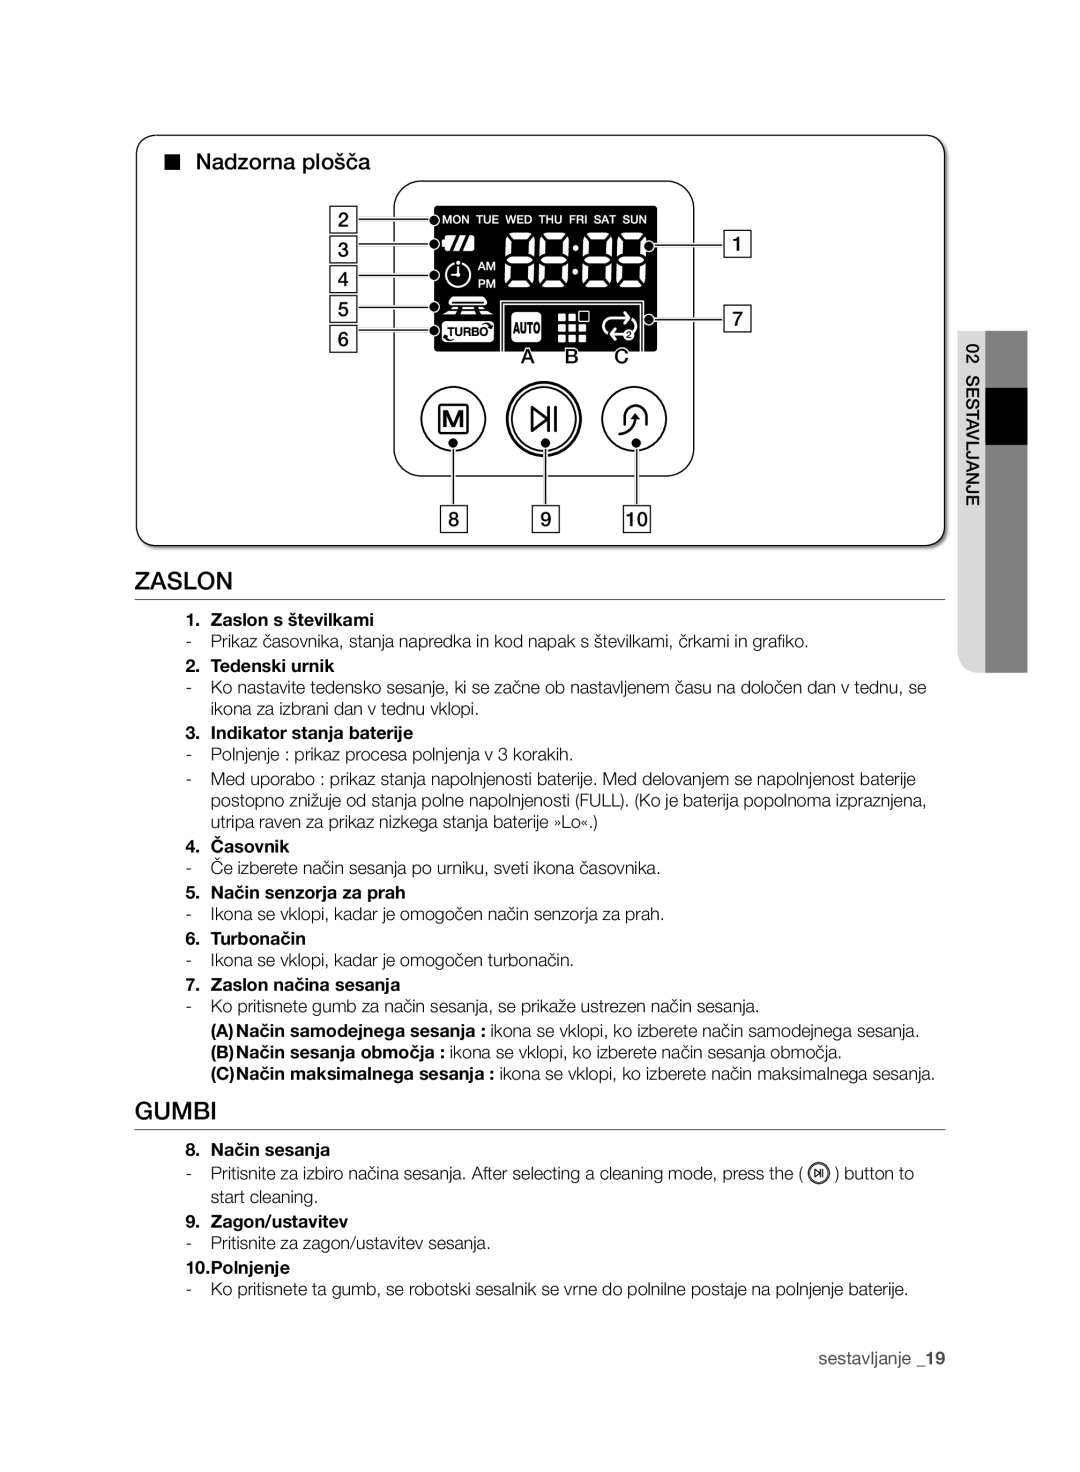 Samsung VCR8950L3B/XEF Gumbi, Nadzorna plošča, Zaslon s številkami, Tedenski urnik, Indikator stanja baterije, A B C 